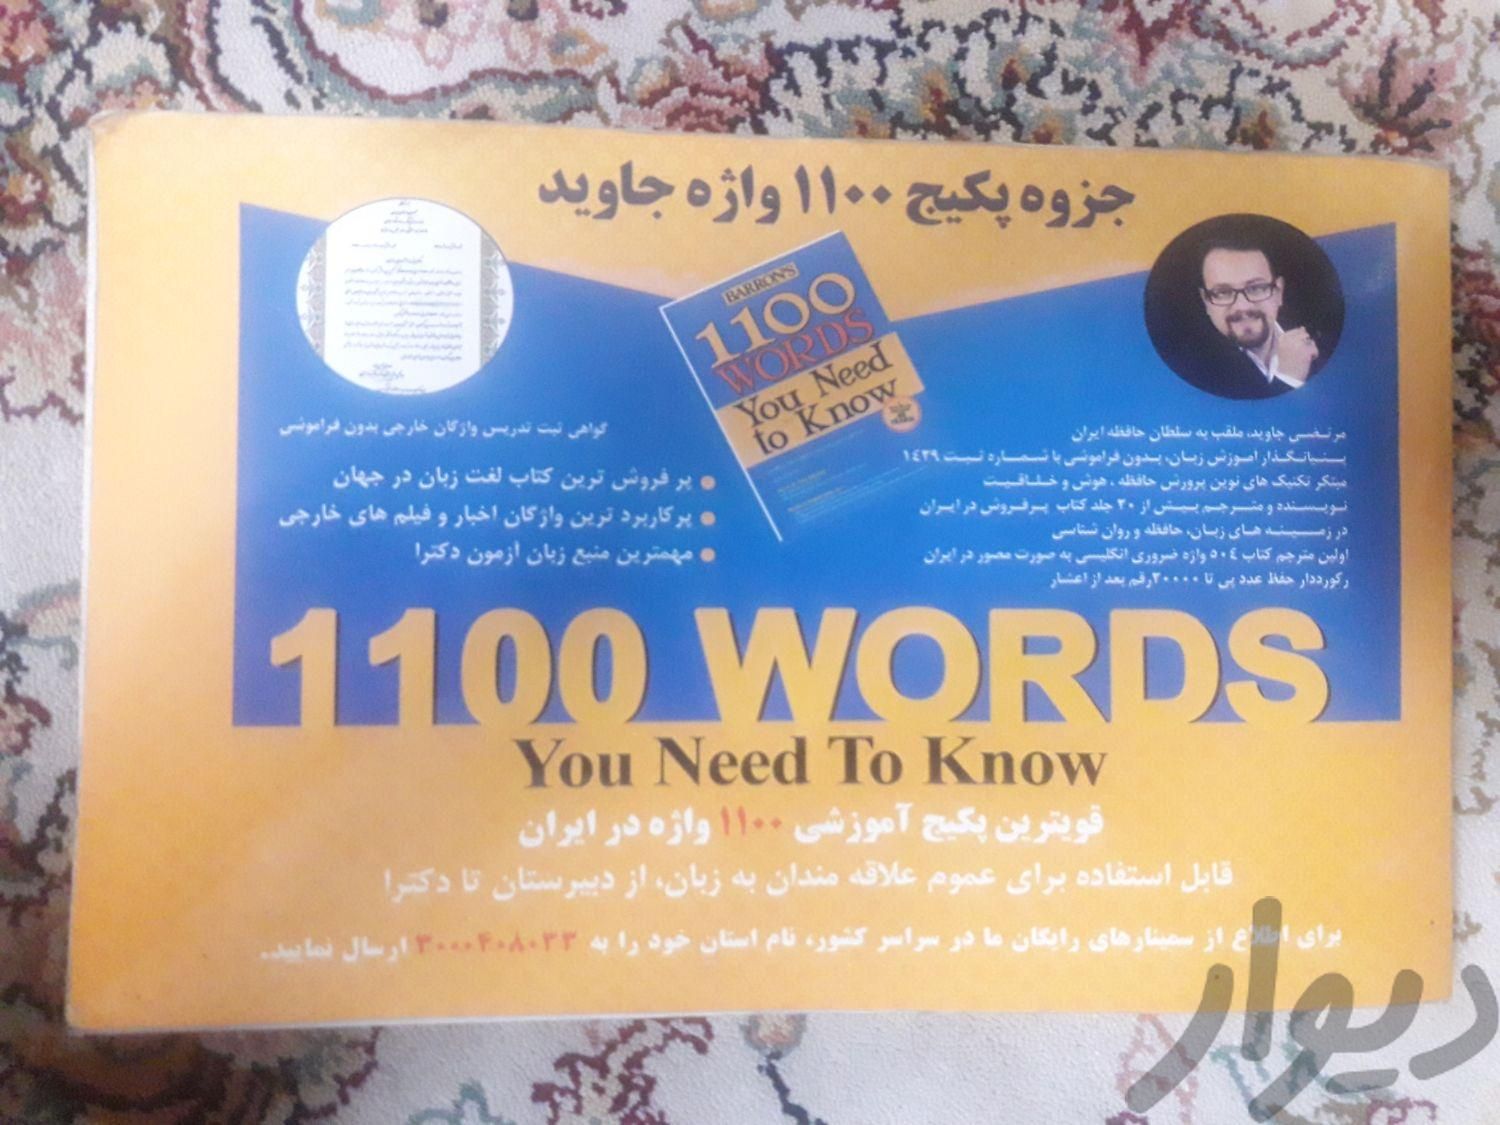 پکیج زبان جاوید|کتاب و مجله آموزشی|تهران, دروازه شمیران|دیوار